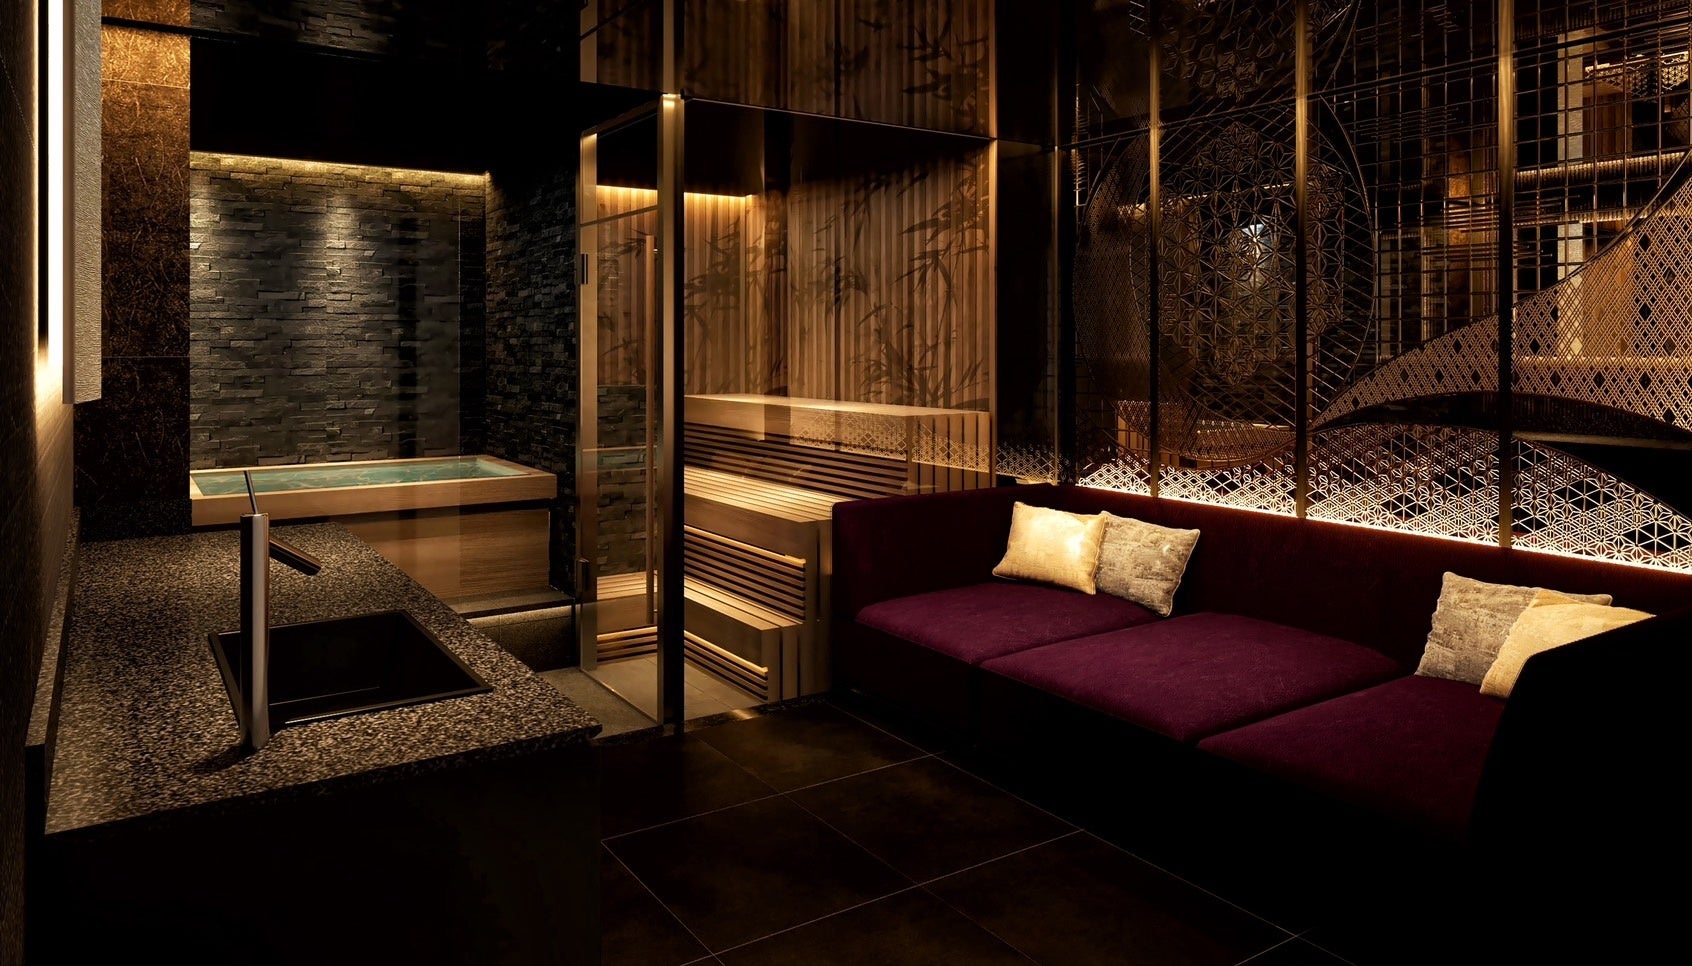 完全個室ラグジュアリーサウナ「KUDOCHI sauna」 3号店となる上野湯島店を5月23日(木)に先行オープン